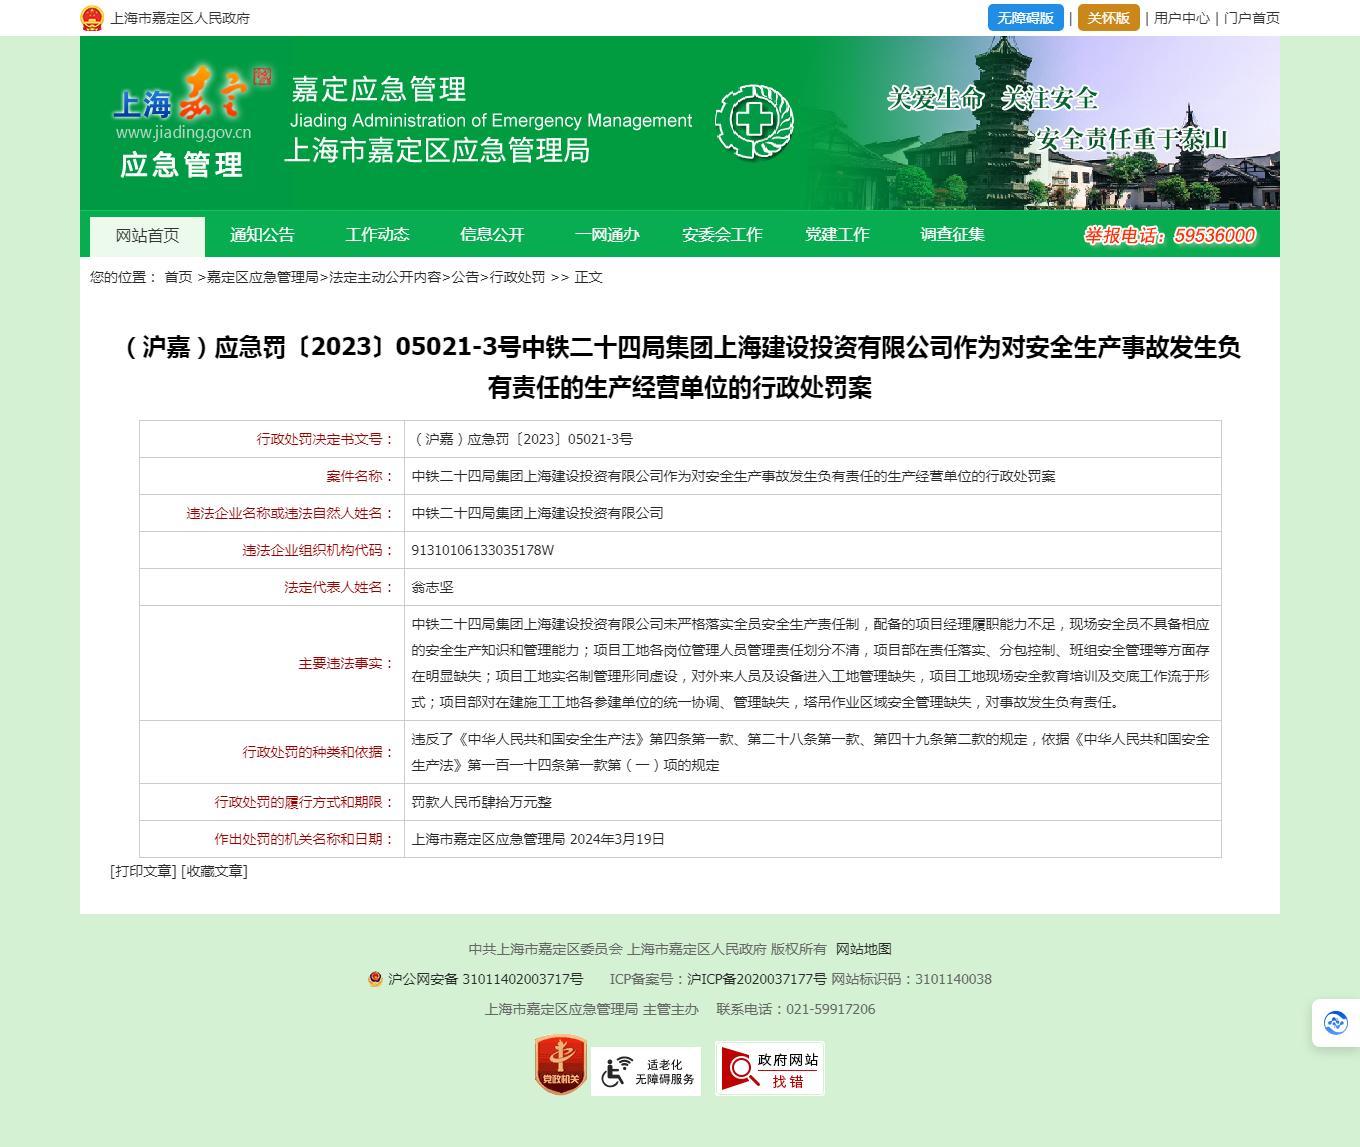 中铁二十四局集团上海建设投资有限公司因对安全生产事故发生负有责任被罚40万元